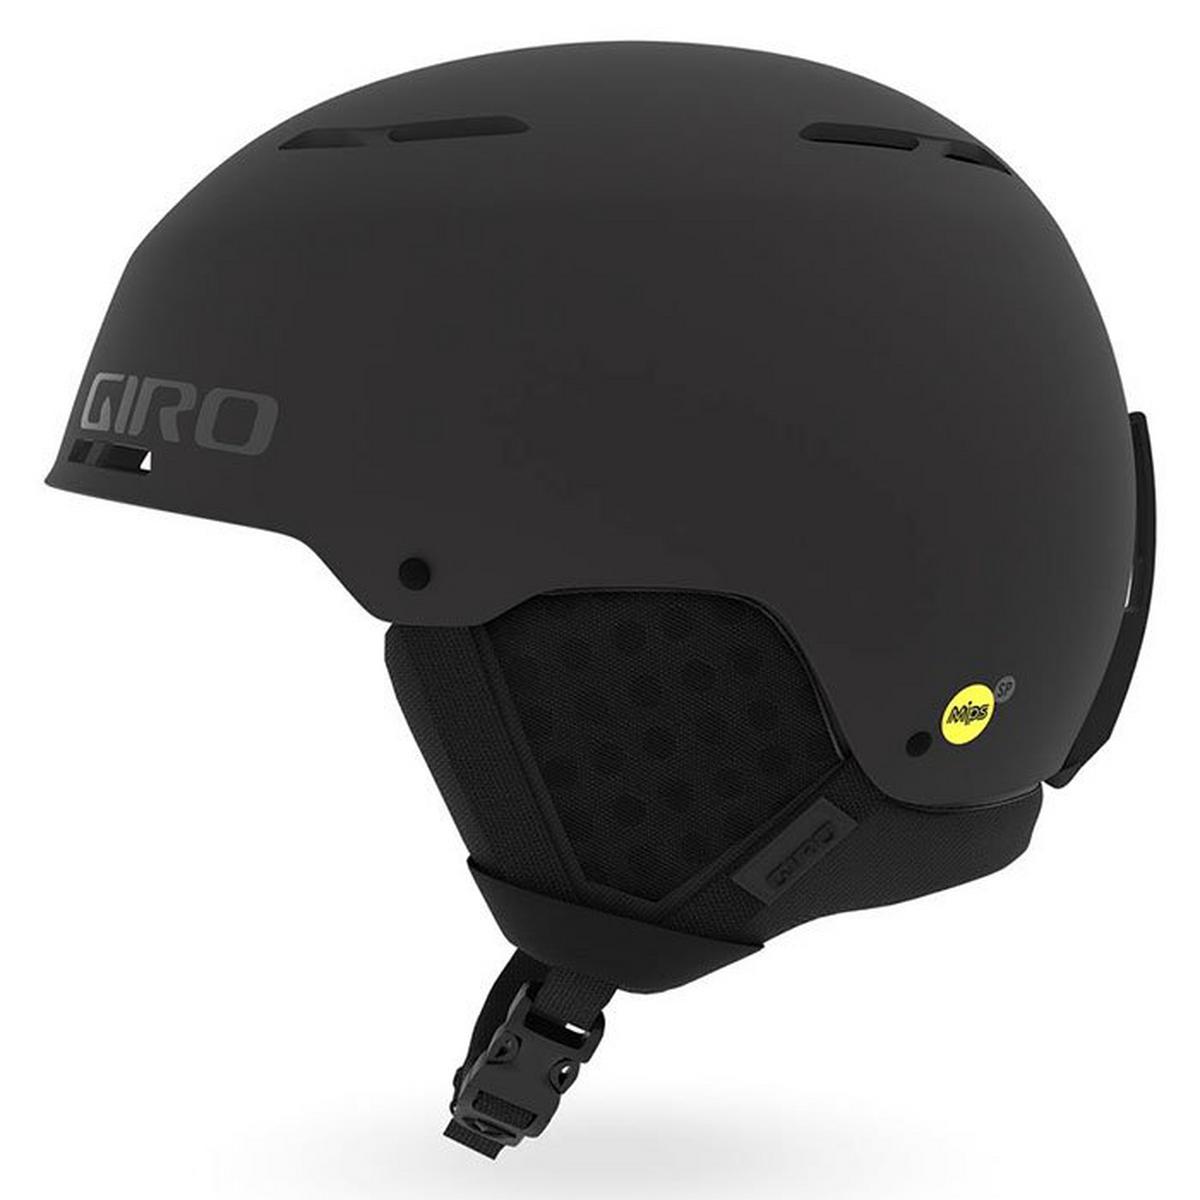 Emerge MIPS® Snow Helmet